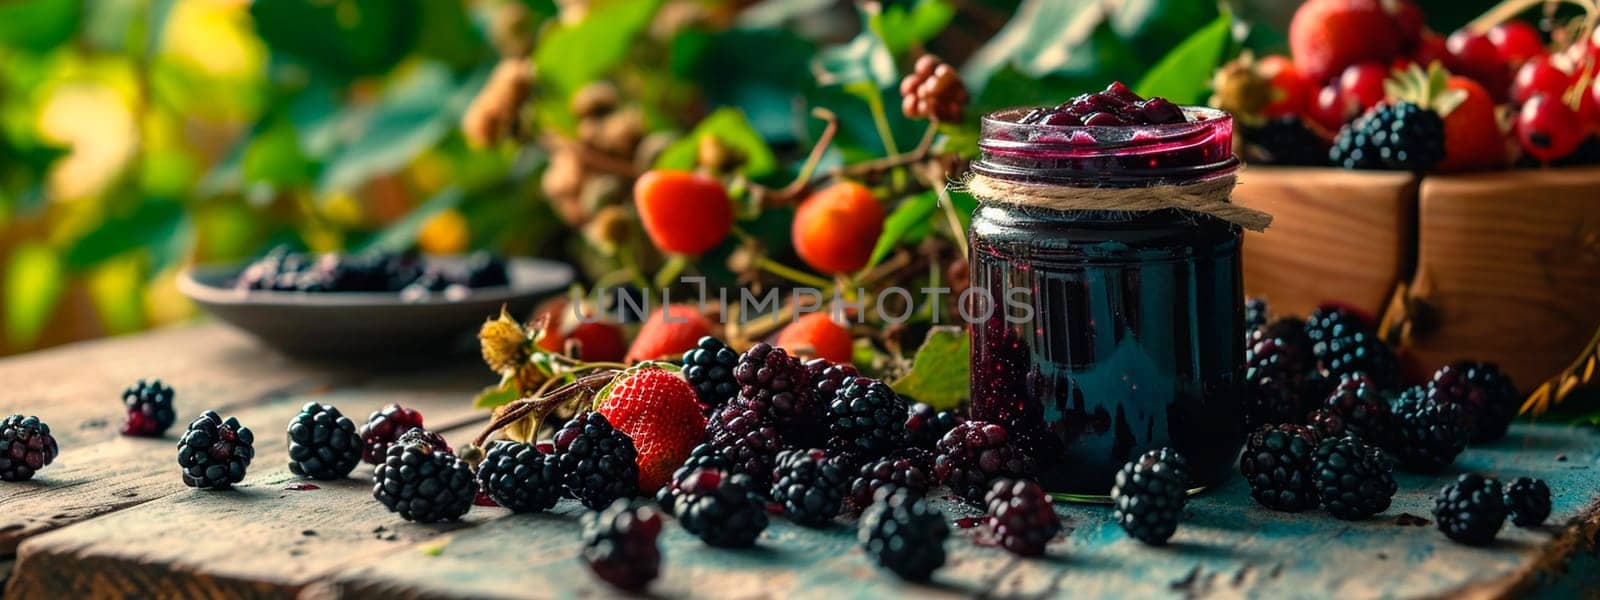 Blackberry jam in the garden. Selective focus. Food.